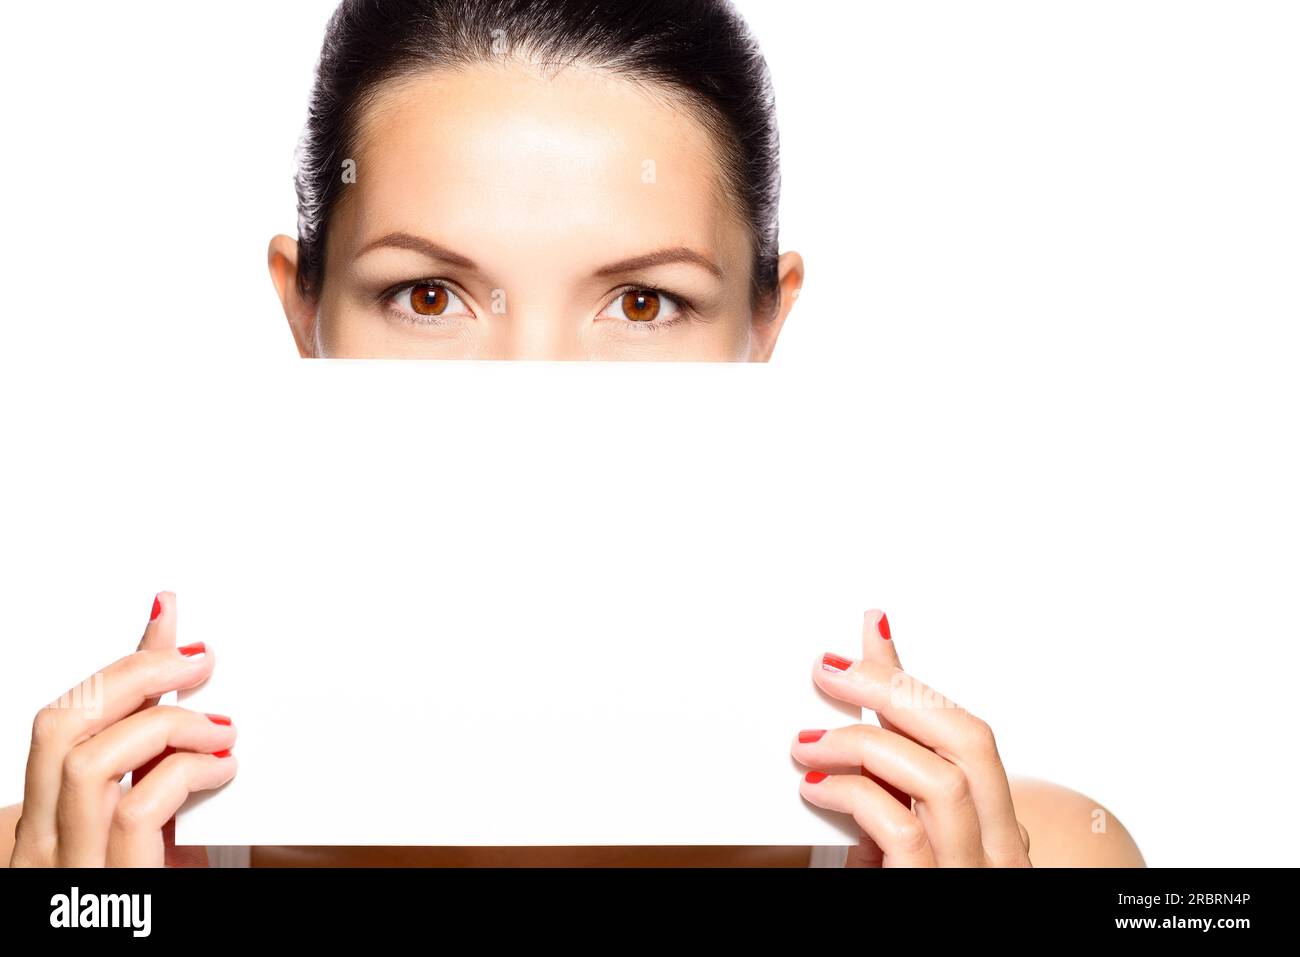 Eine Frau mit schönen Augen, die ein leeres weißes Schild hält, das die untere Hälfte ihres Gesichts, Kopf und Schultern verdeckt Stockfoto